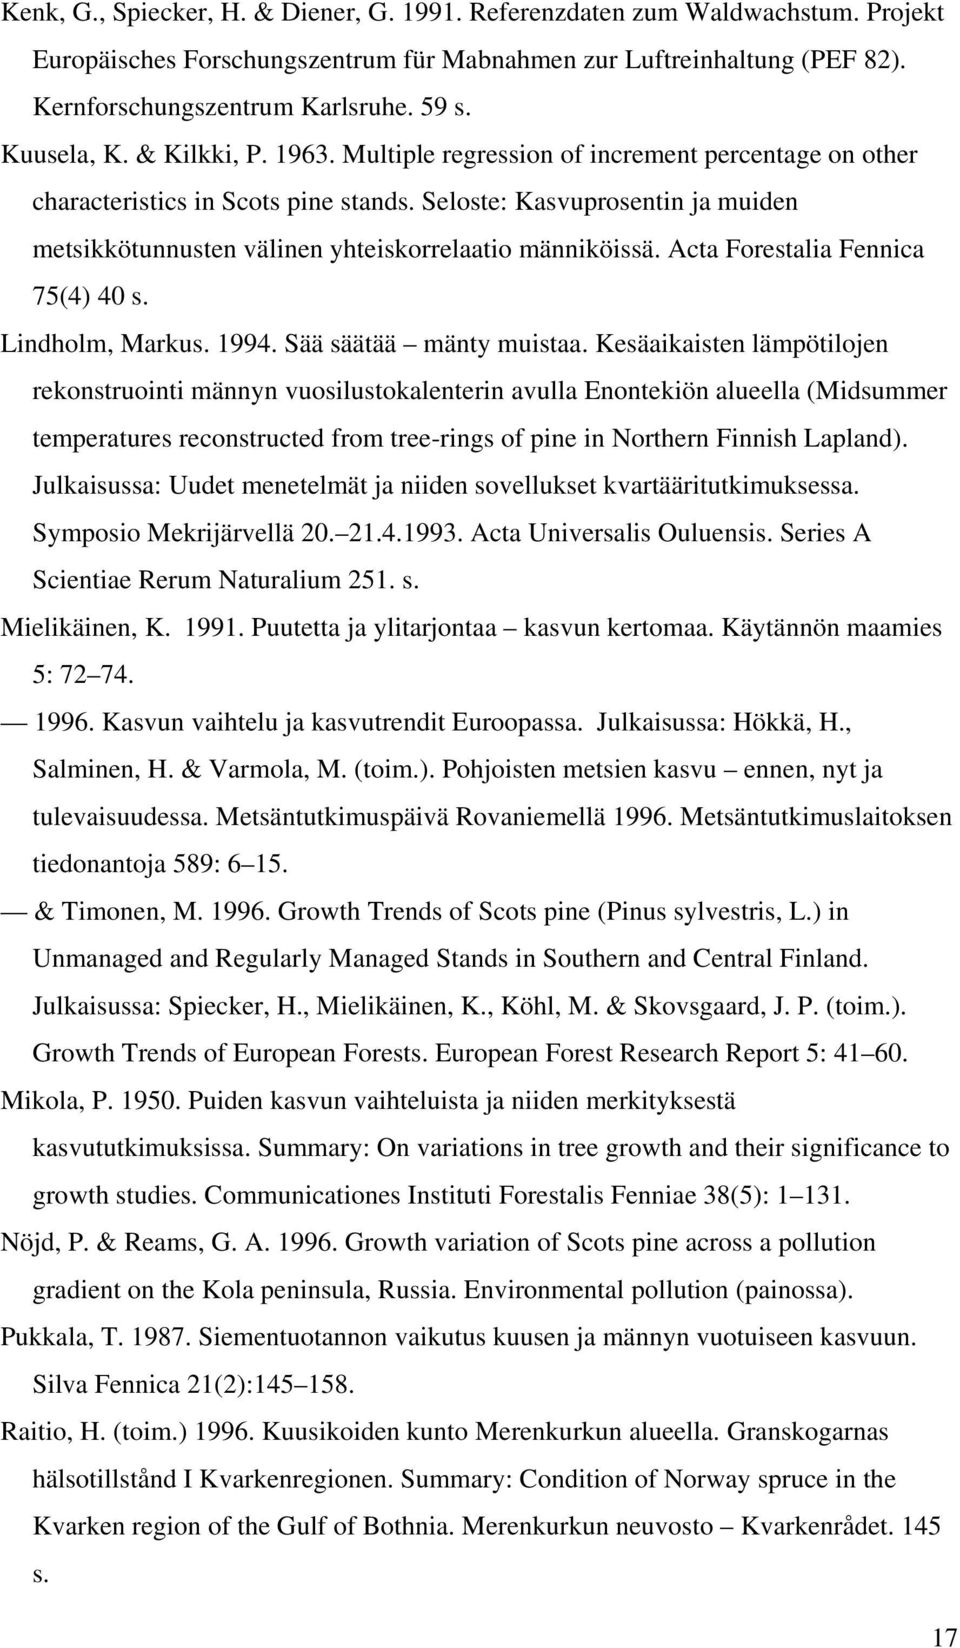 Seloste: Kasvuprosentin ja muiden metsikkötunnusten välinen yhteiskorrelaatio männiköissä. Acta Forestalia Fennica 75(4) 40 s. Lindholm, Markus. 1994. Sää säätää mänty muistaa.